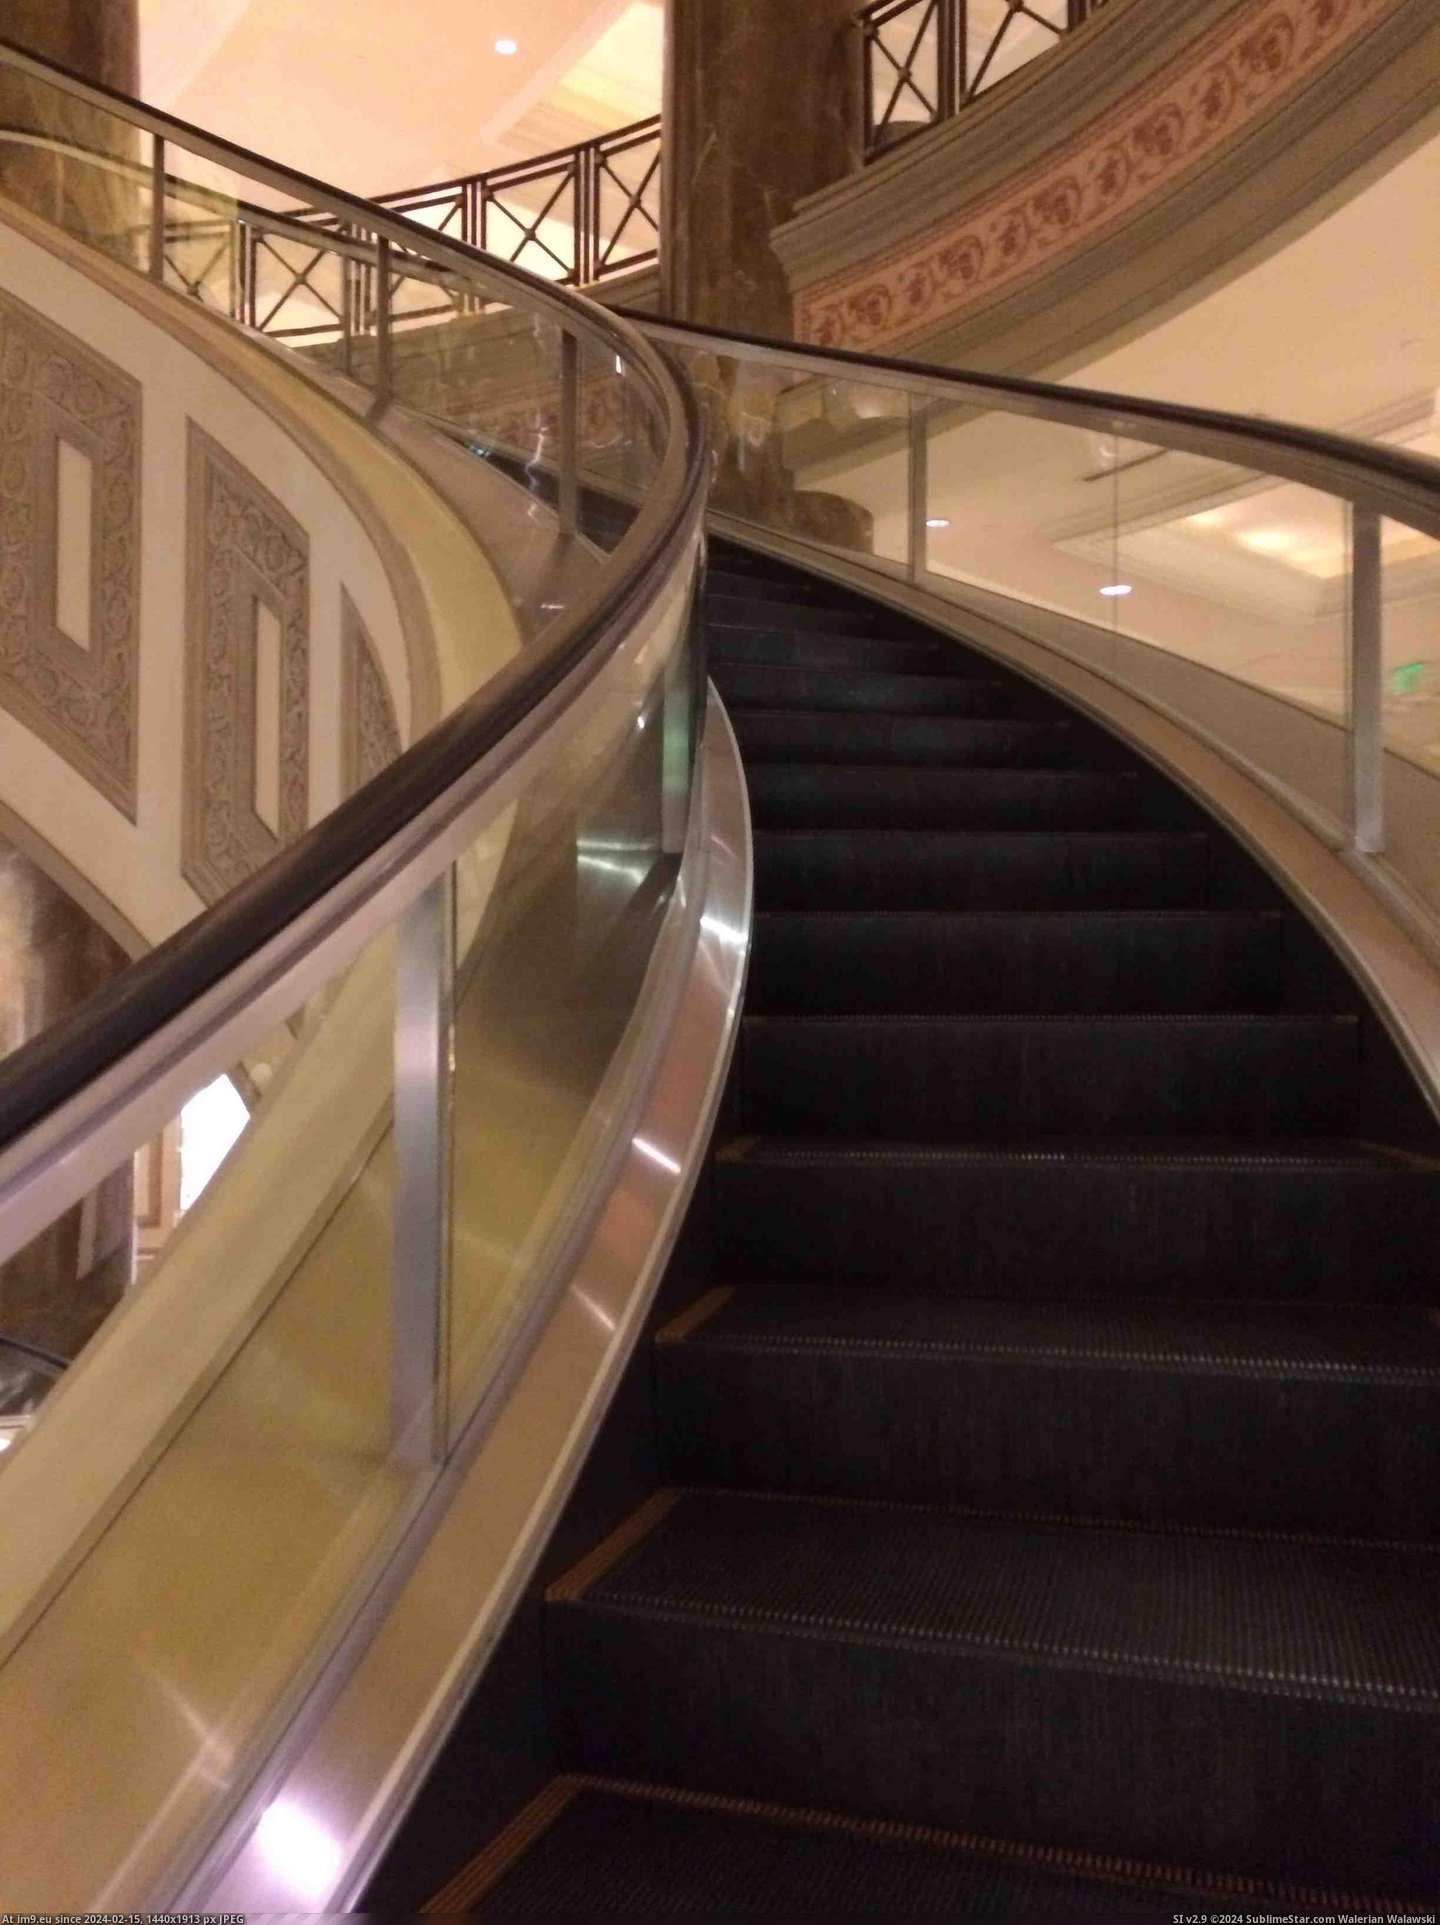 #Hotel #Escalators #Spiral [Mildlyinteresting] My hotel has spiral escalators Pic. (Изображение из альбом My r/MILDLYINTERESTING favs))